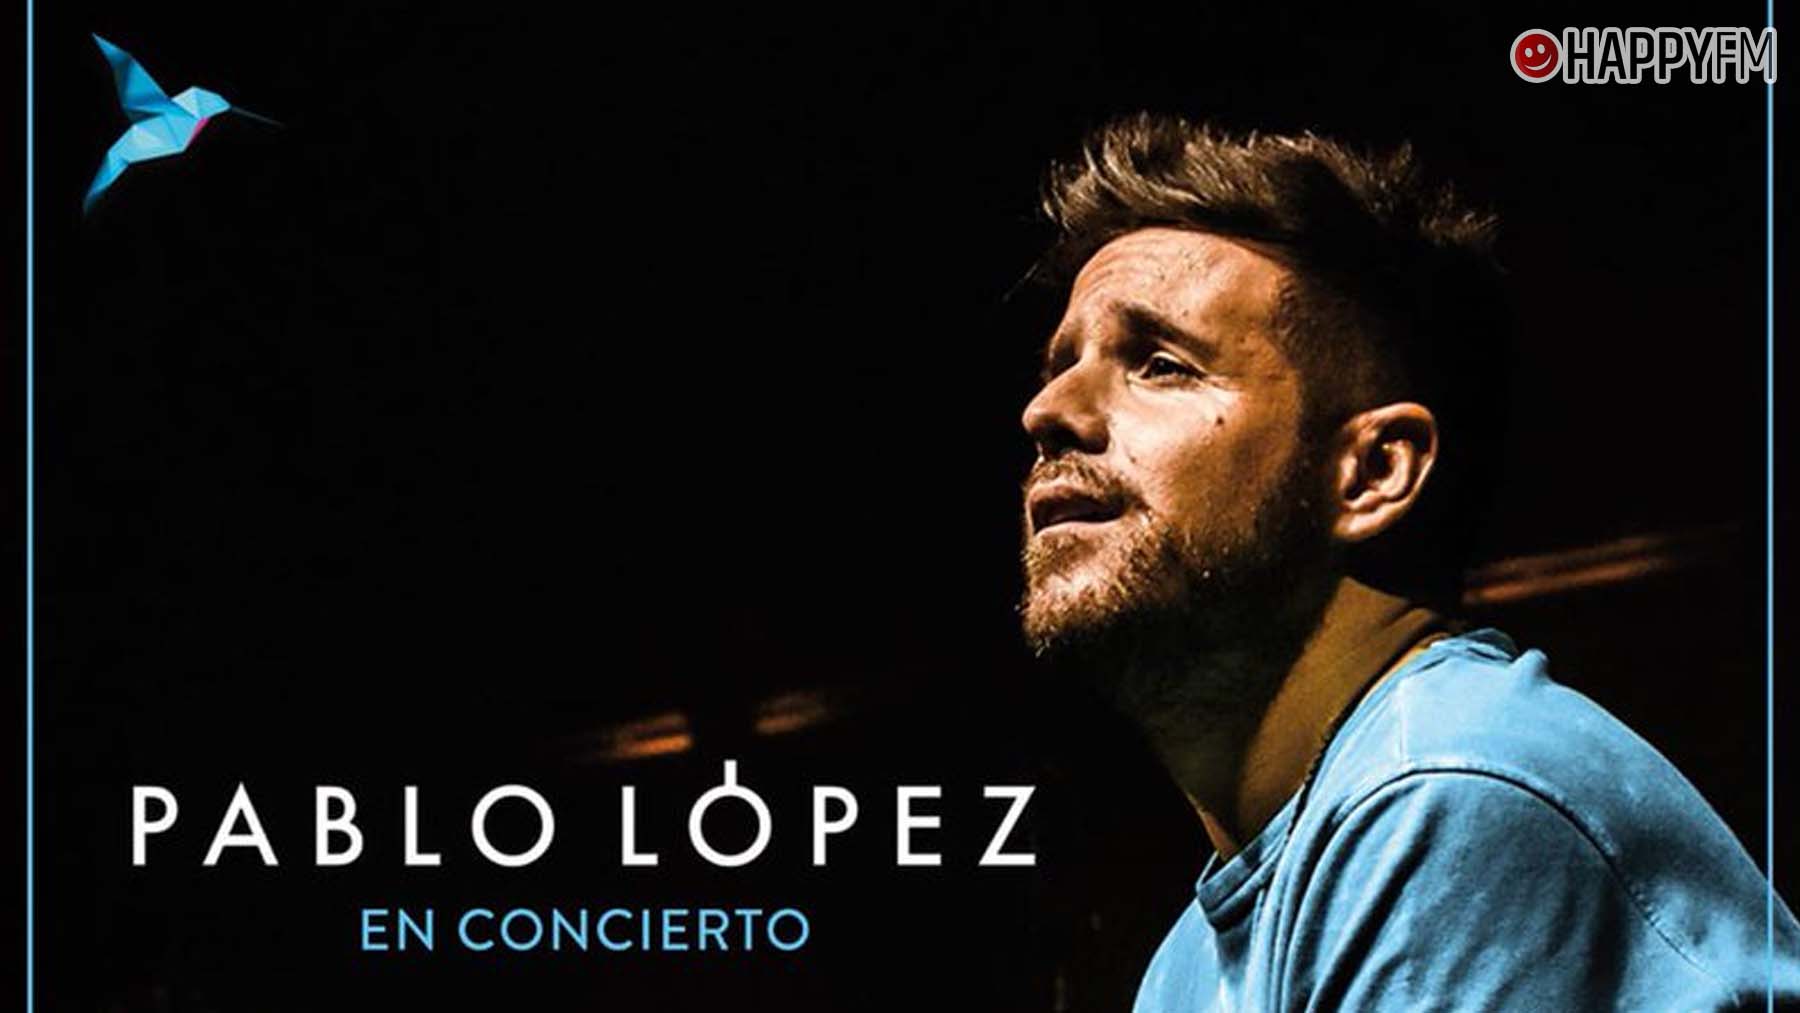 Pablo López comienza una nueva etapa musical con su gira ‘Pablo López